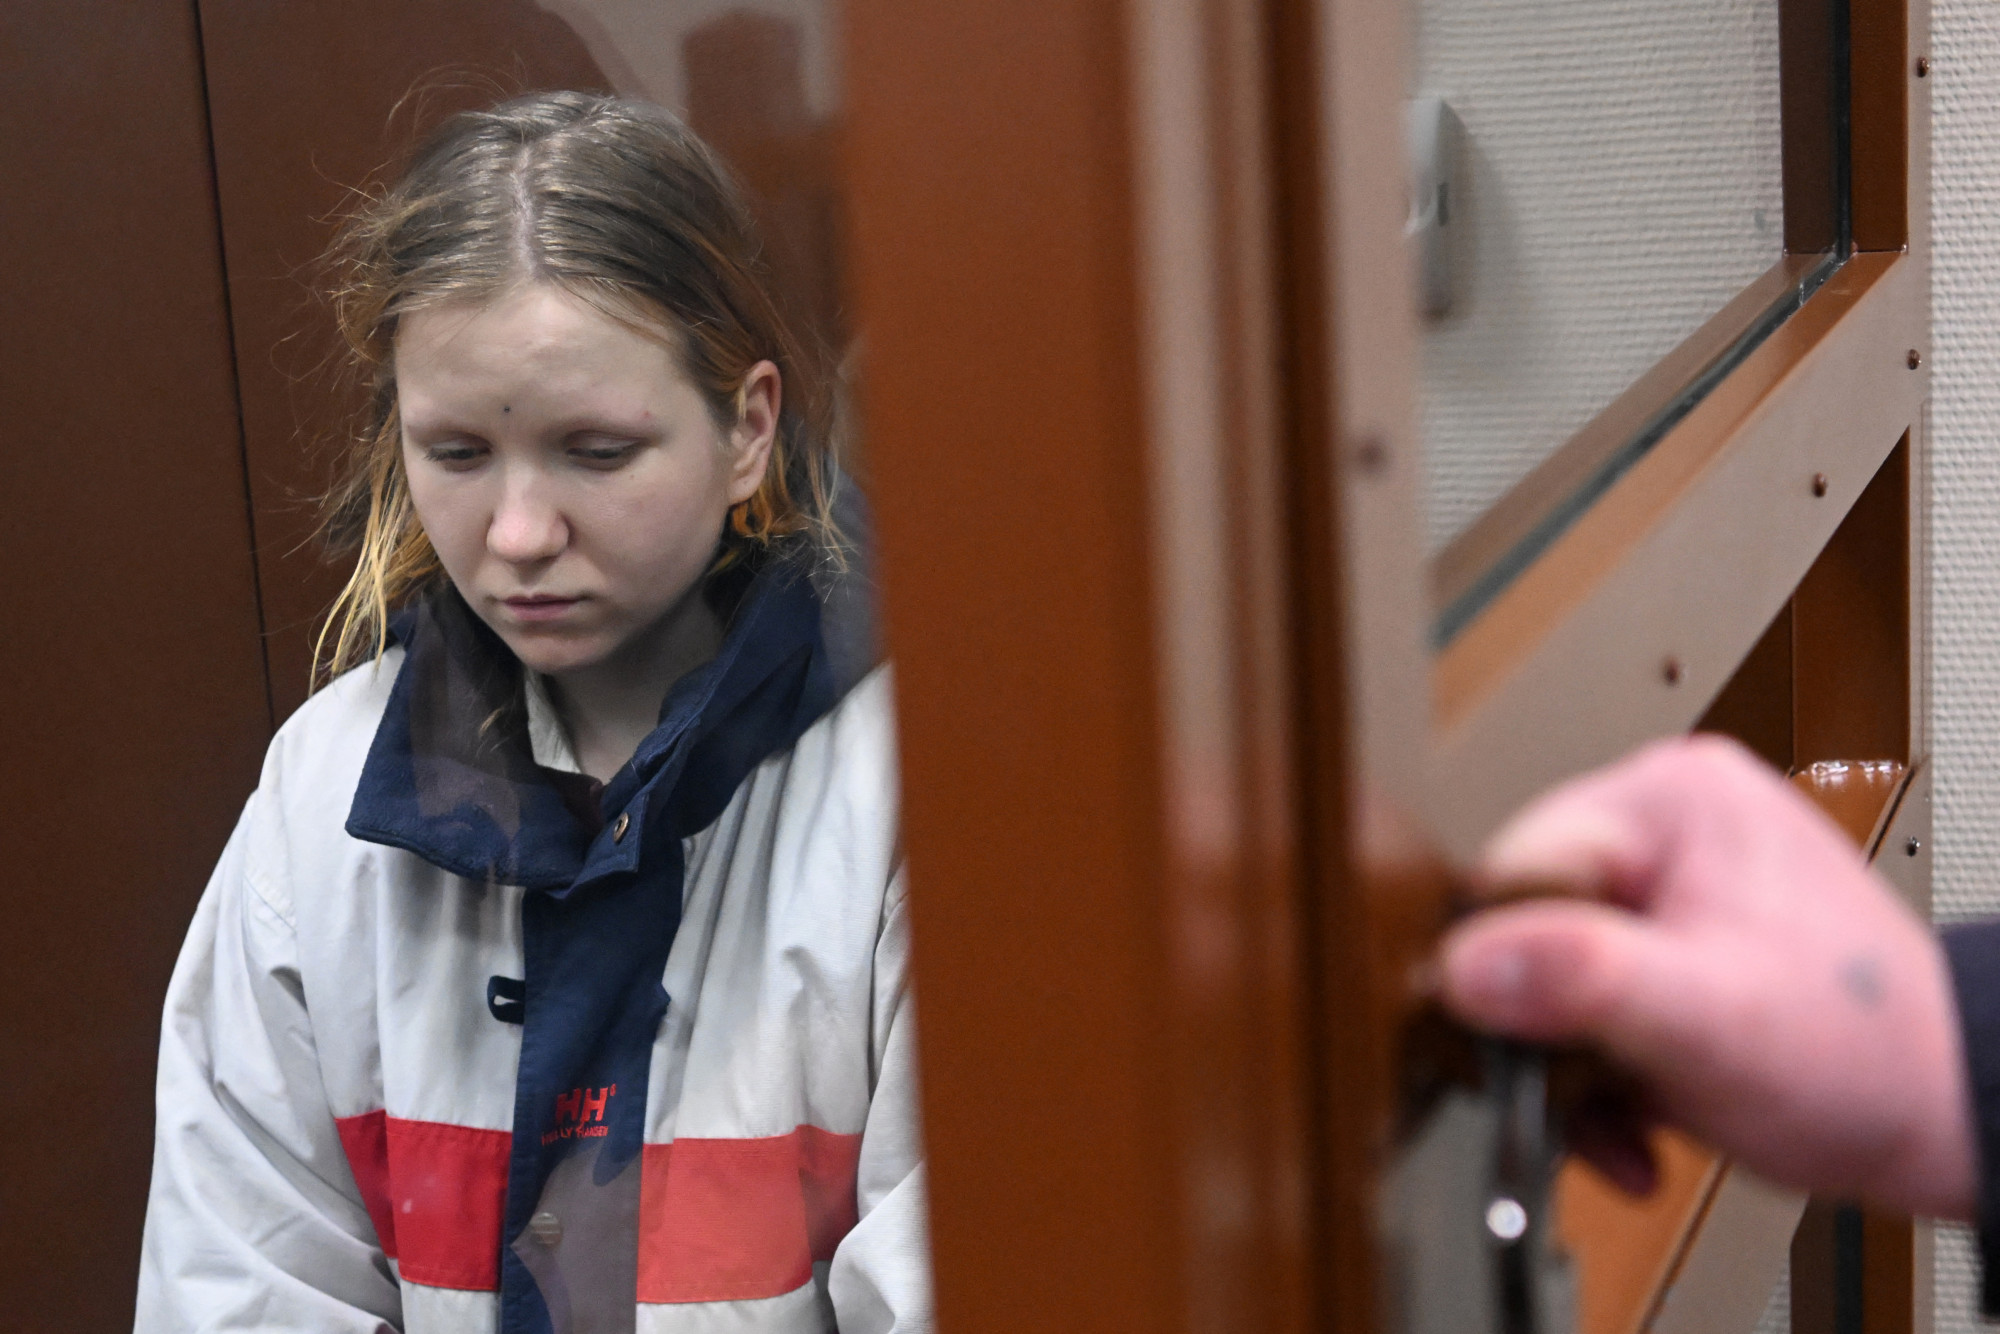 Terrorizmussal vádolják a nőt, aki az orosz rendőrök szerint felrobbantotta az orosz katonai bloggert